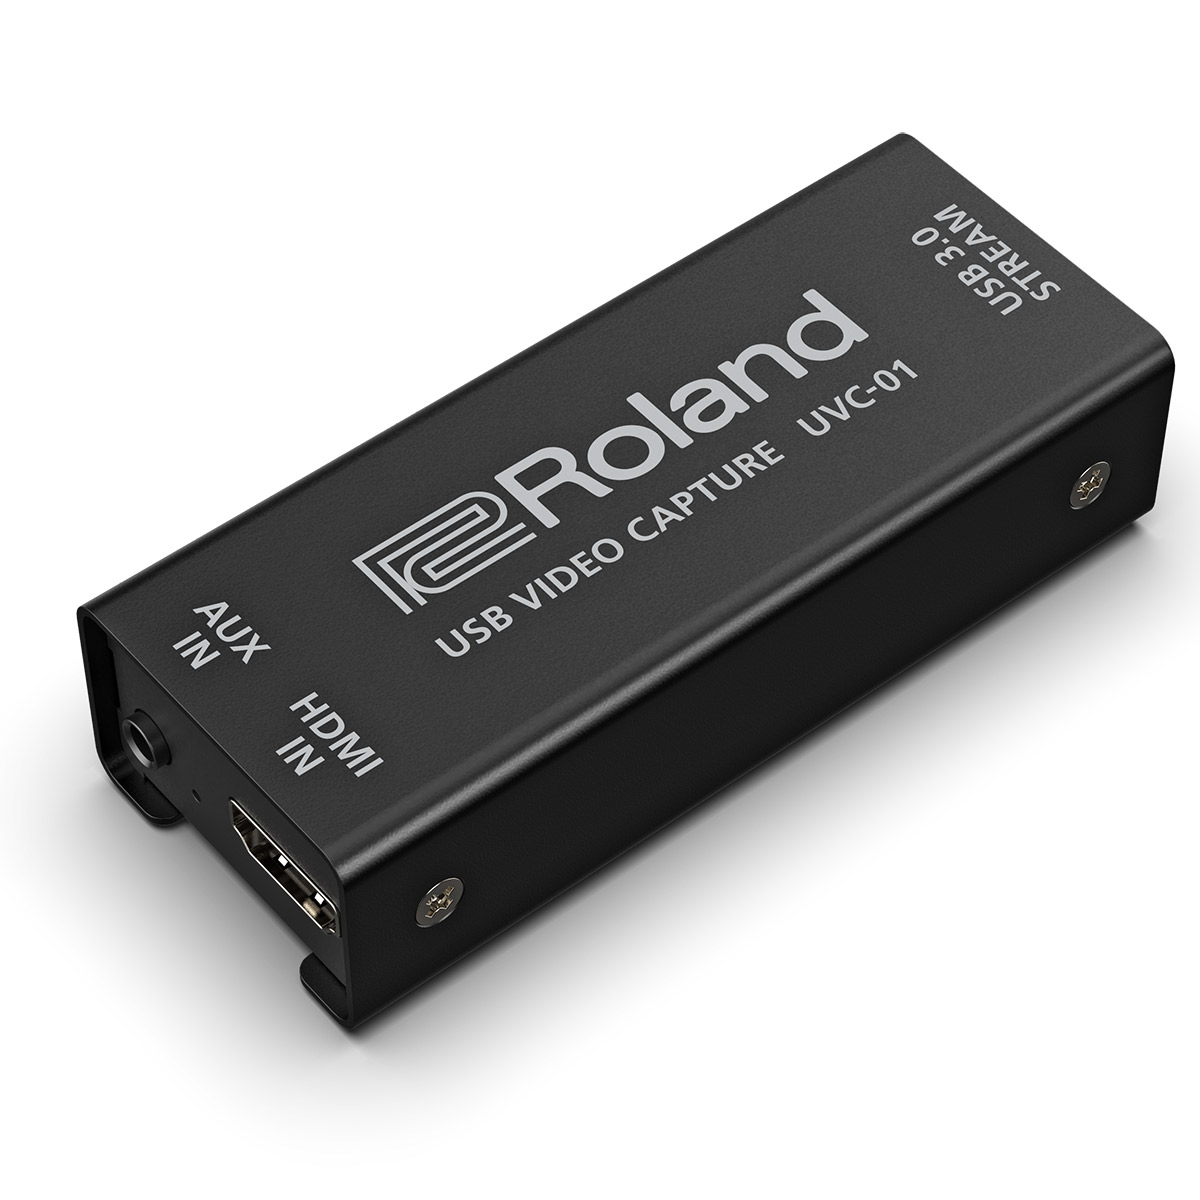 ゴッホ 星月夜 ローランド Roland UVC-01 【HDMI to USB 3.0 ビデオキャプチャー】